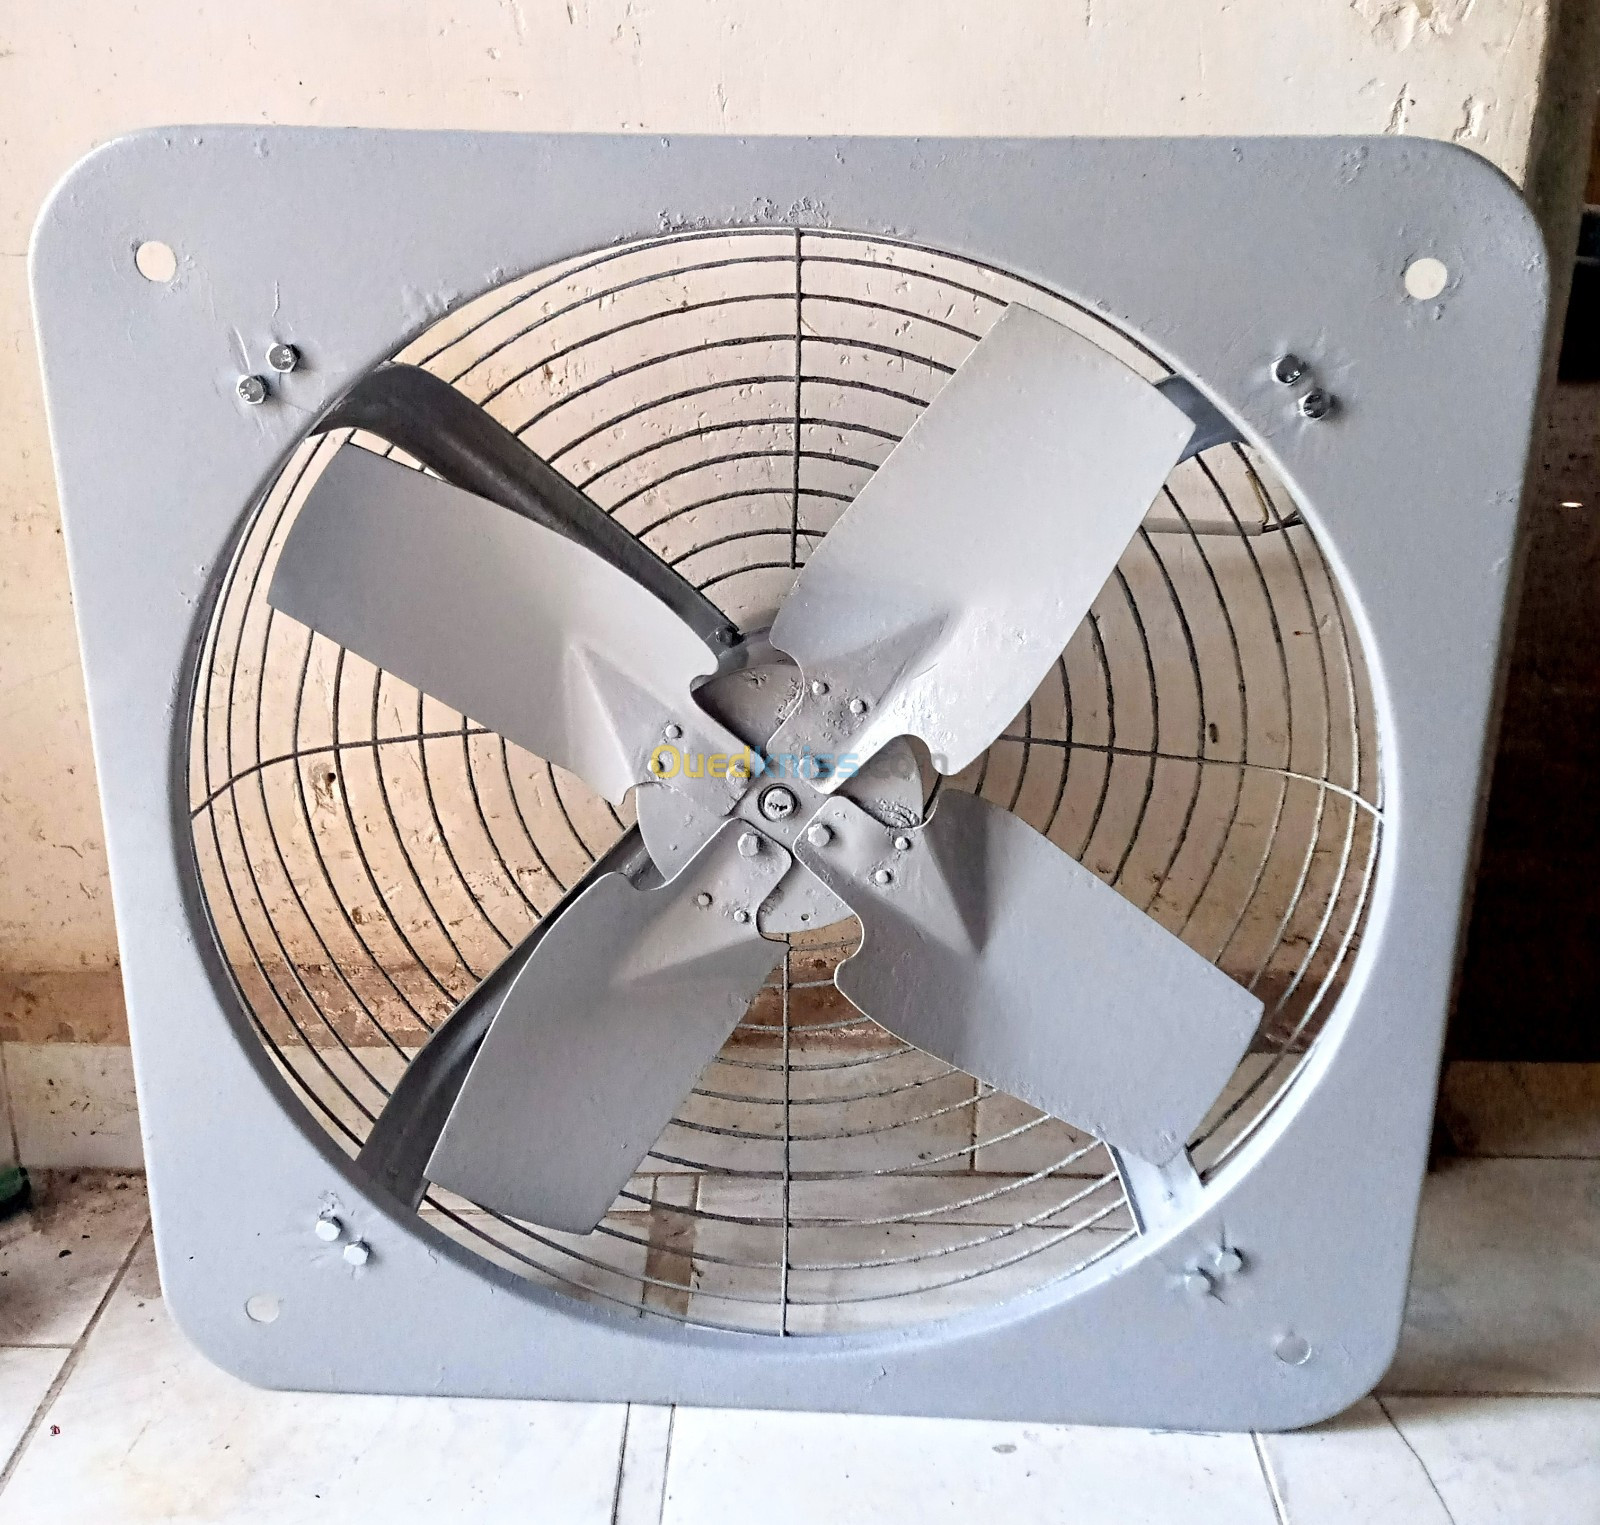 Vend ventilateur extracteur industriel à haute température 380v/600w -  Boumerdès Algeria